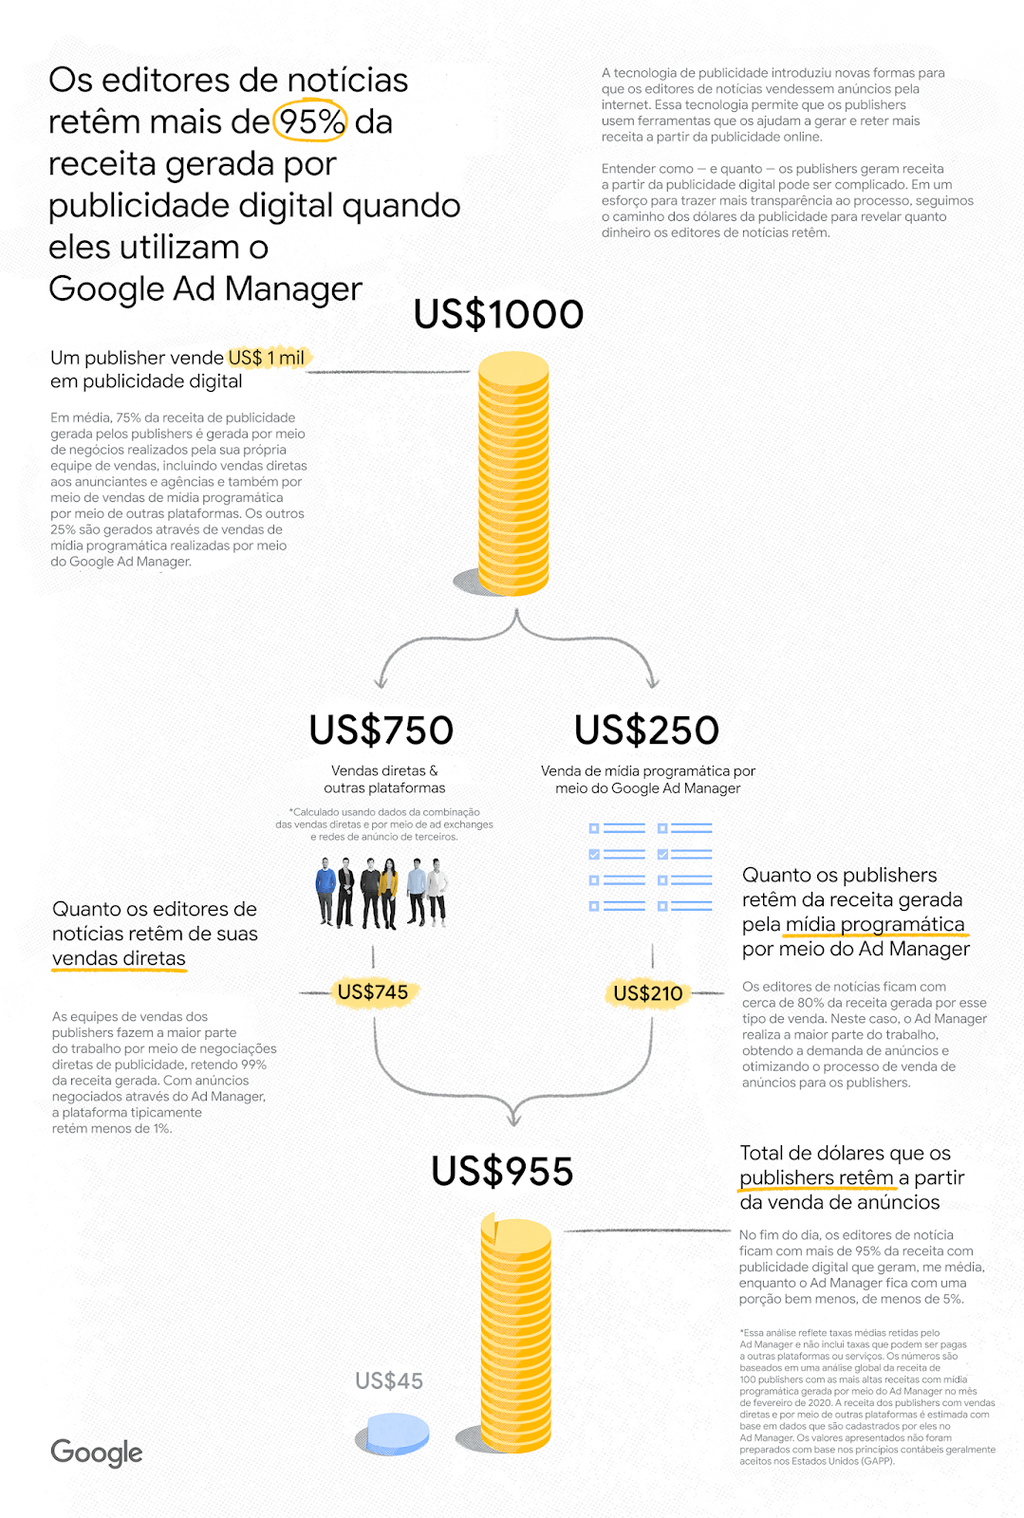 O Google afirma que os publishers ficam com 95% da receita gerada pelo Ad Manager (Imagem: Google)